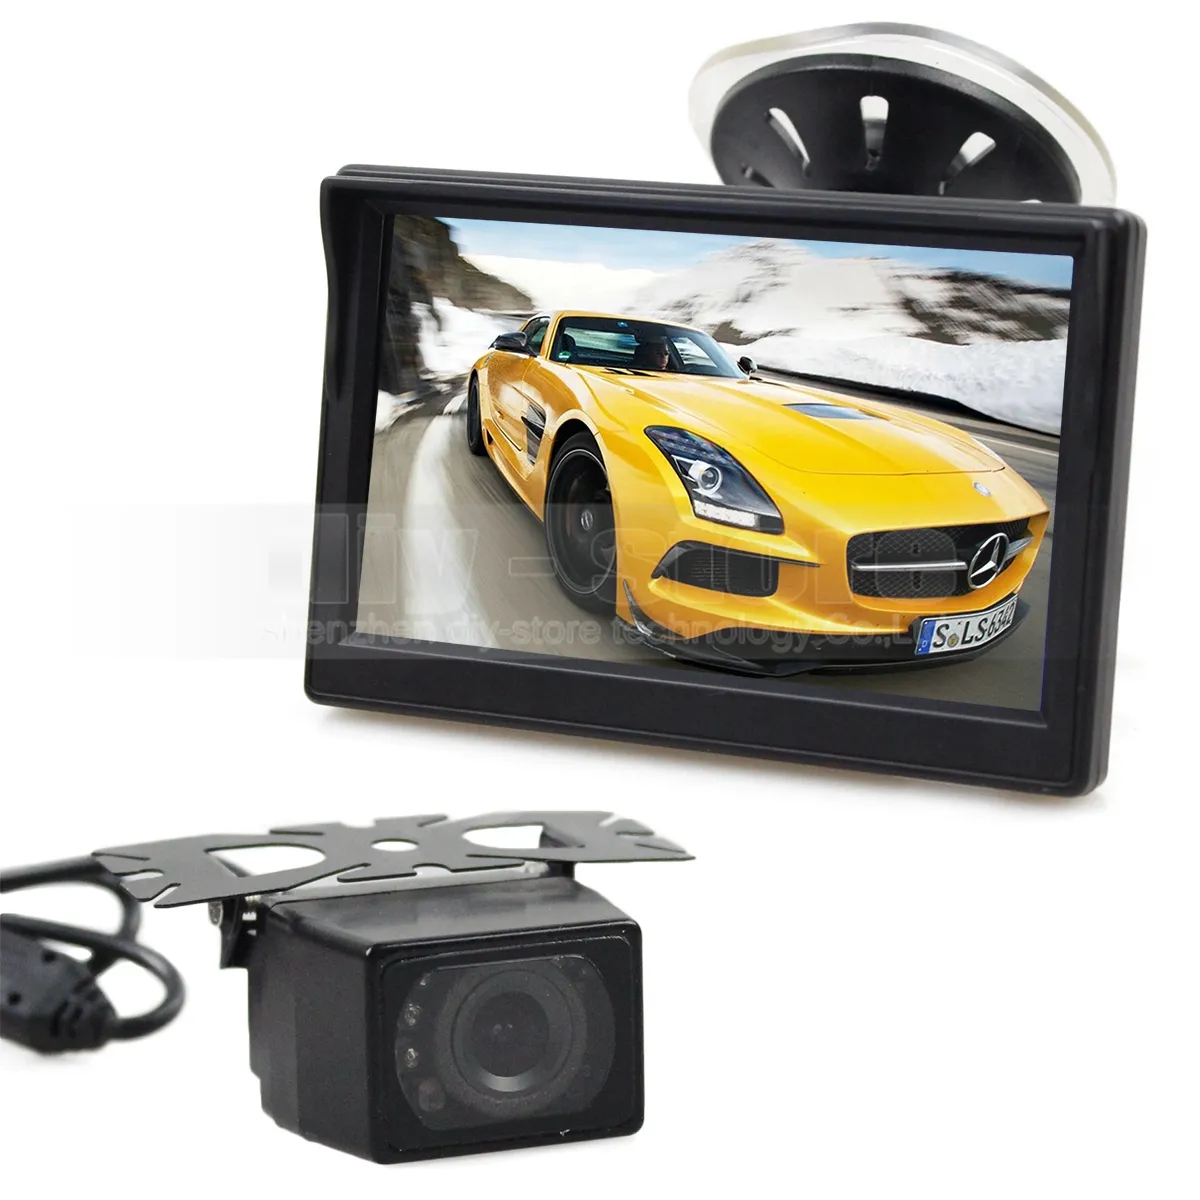 5INCH LCD-skärm Bakifrån Monitor Bilmonitor + IR Nattvision Backup HD-bilkamera + Gratis 5 meter Videokabel